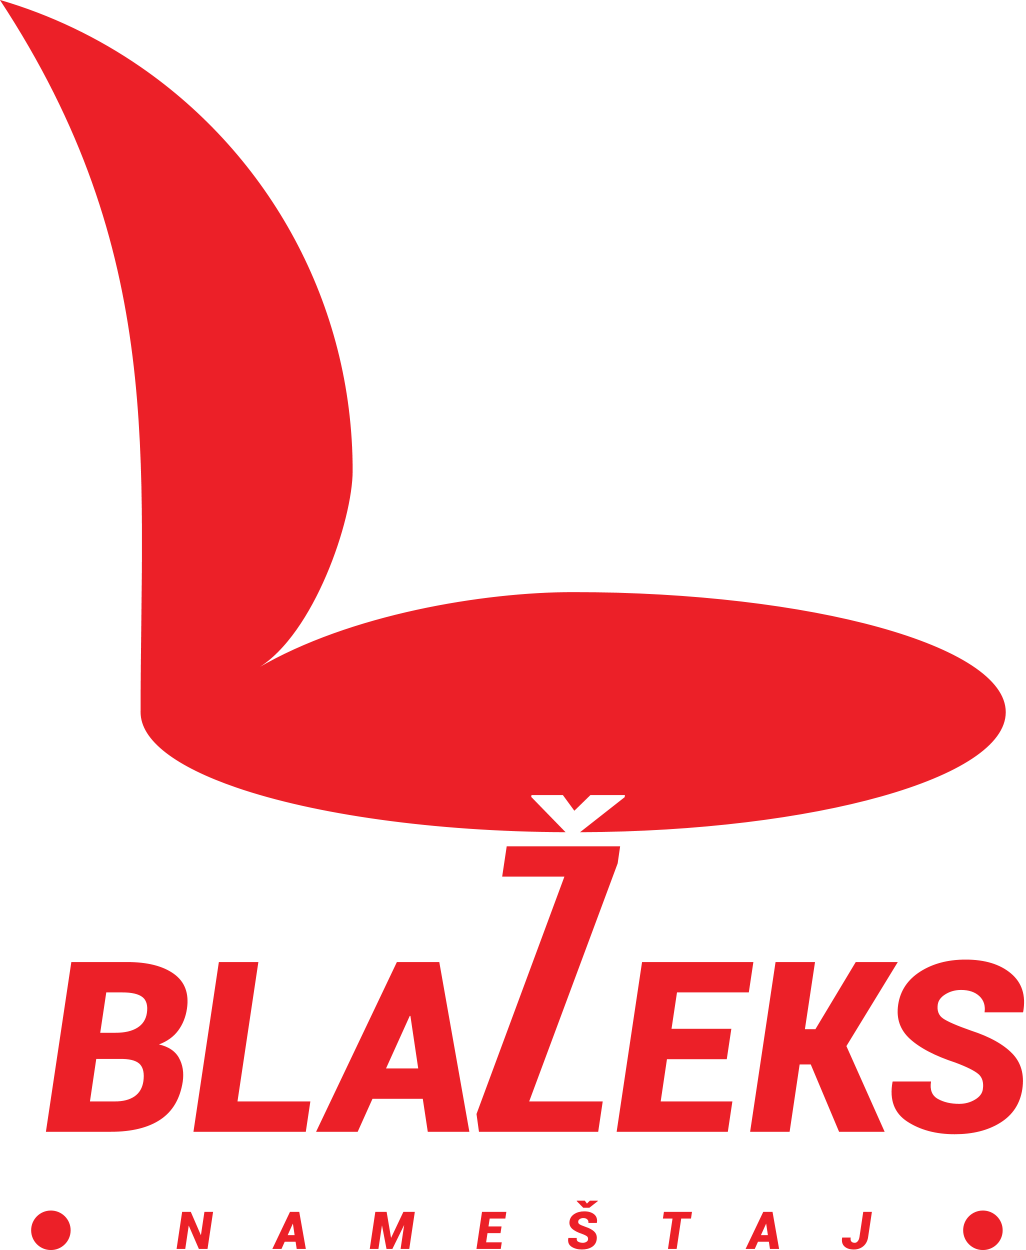 Blazeks namestaj logo